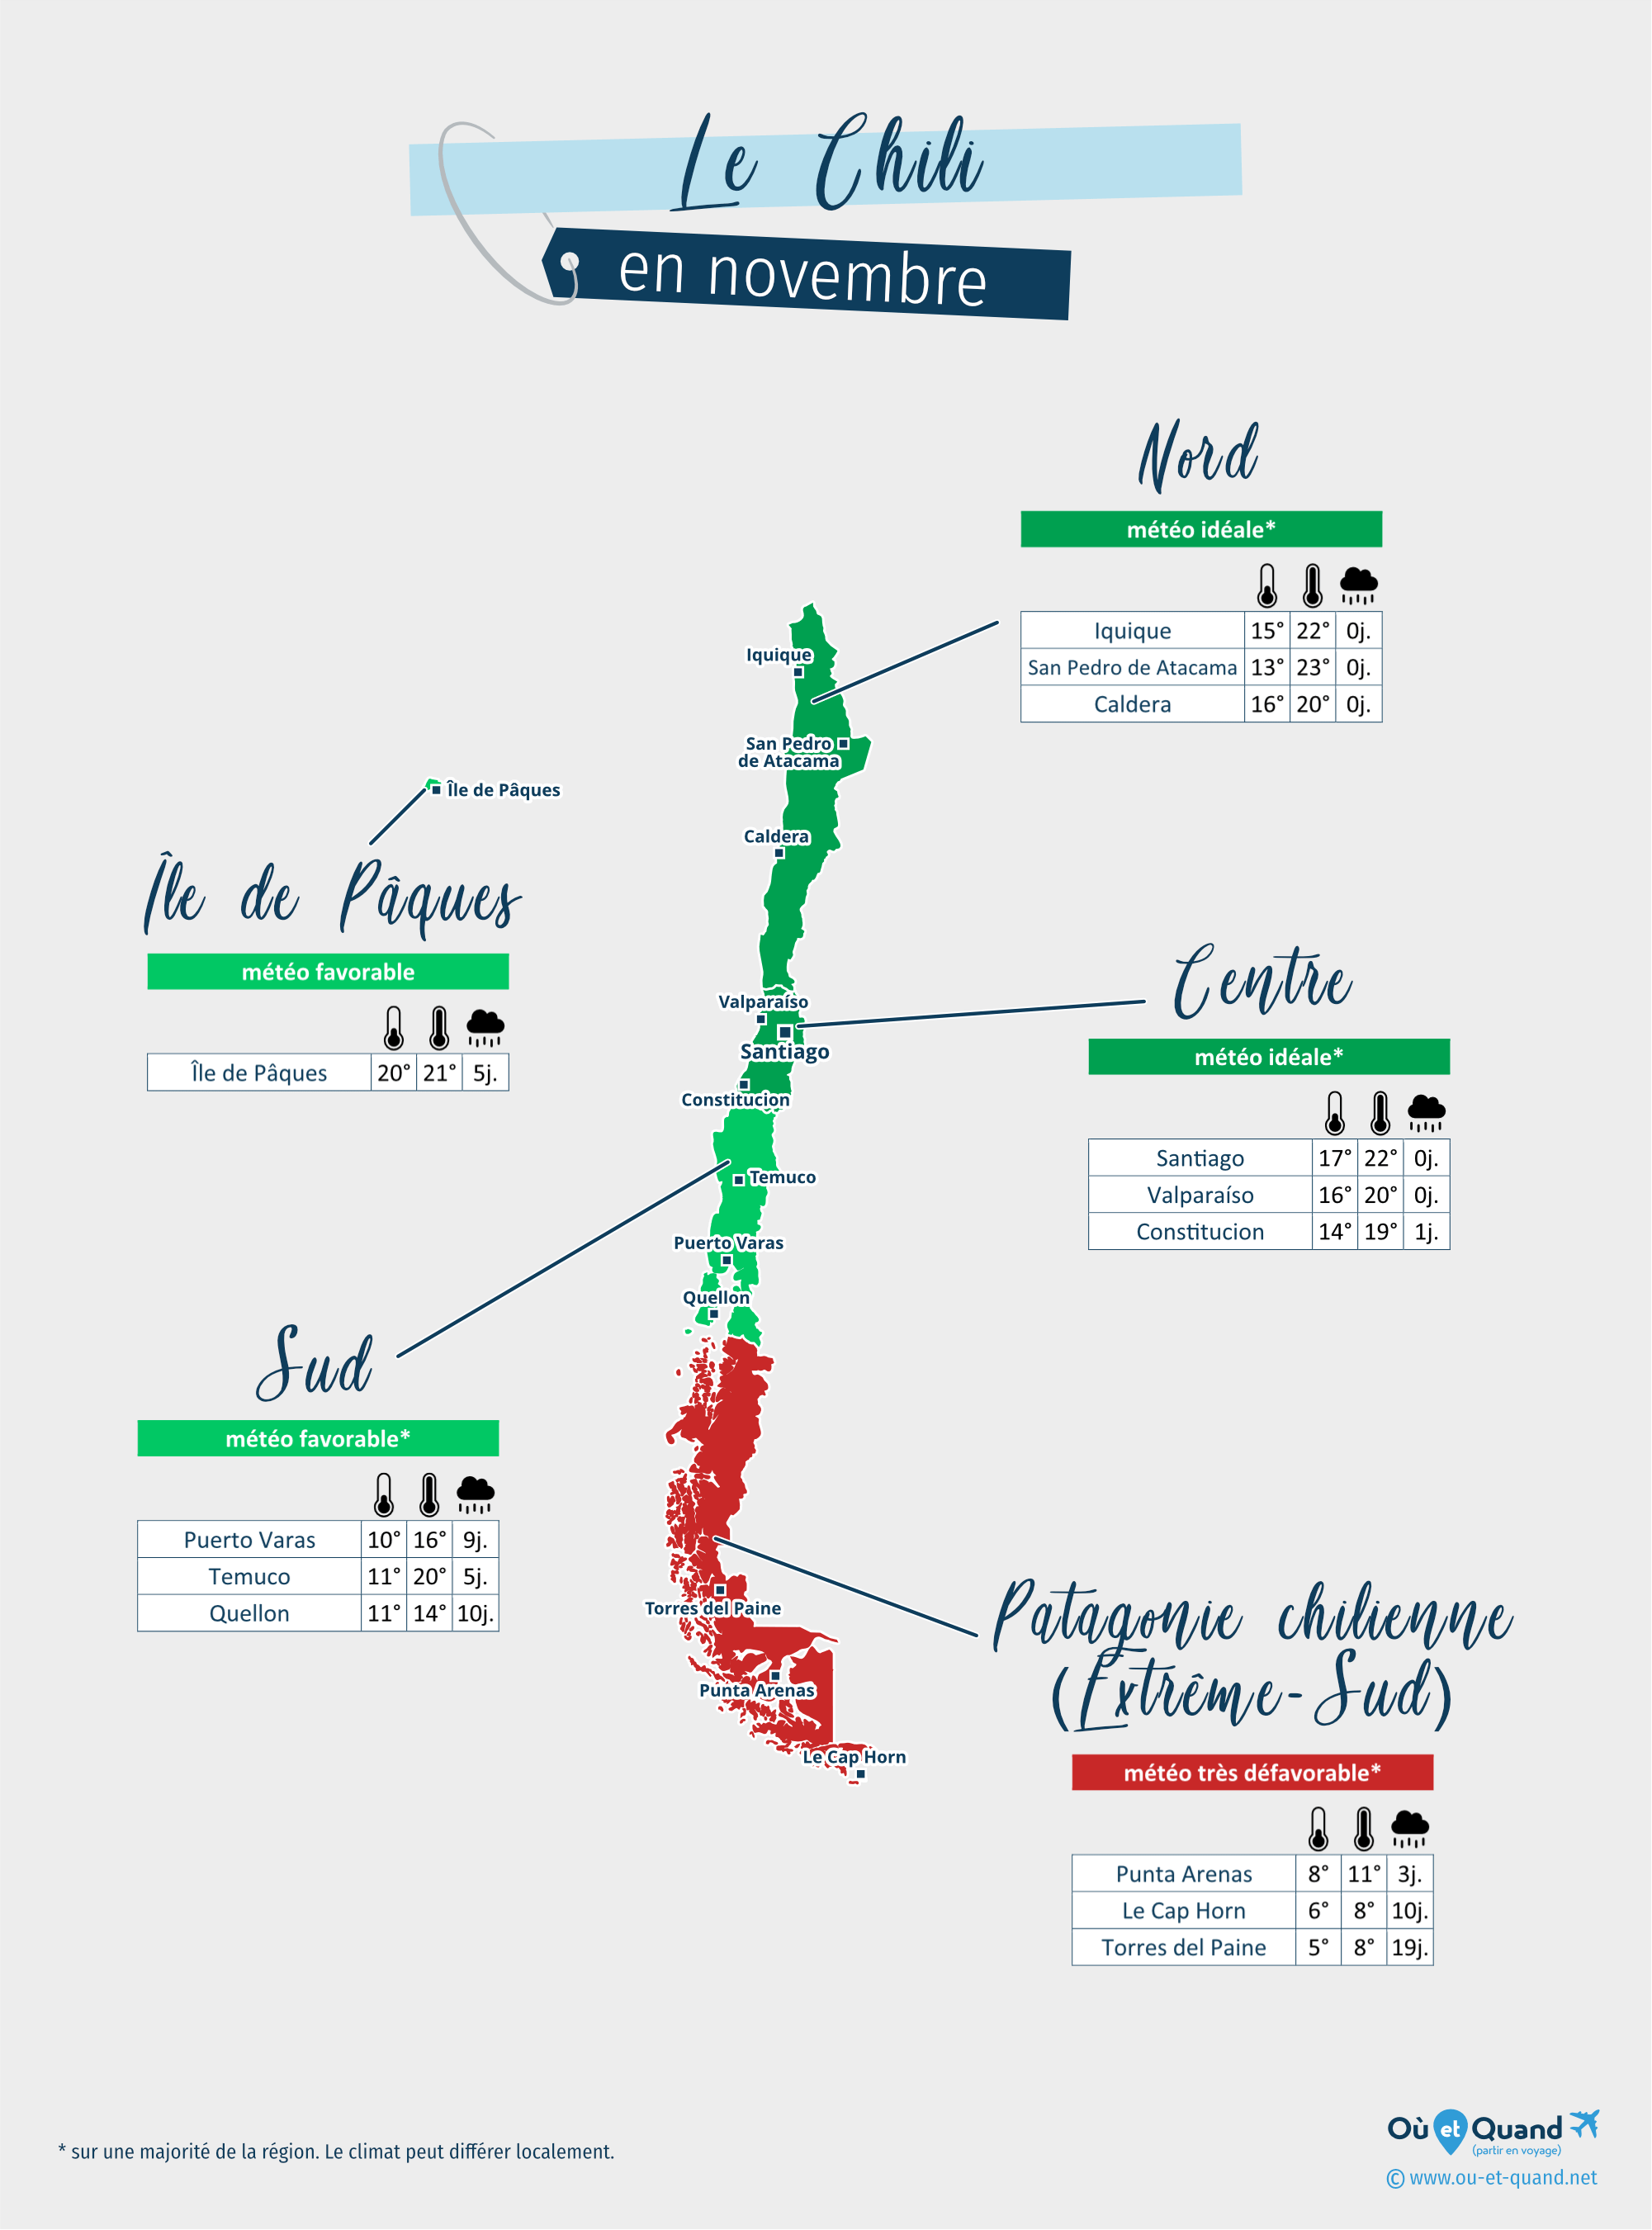 Carte de la météo en novembre dans les régions du Chili